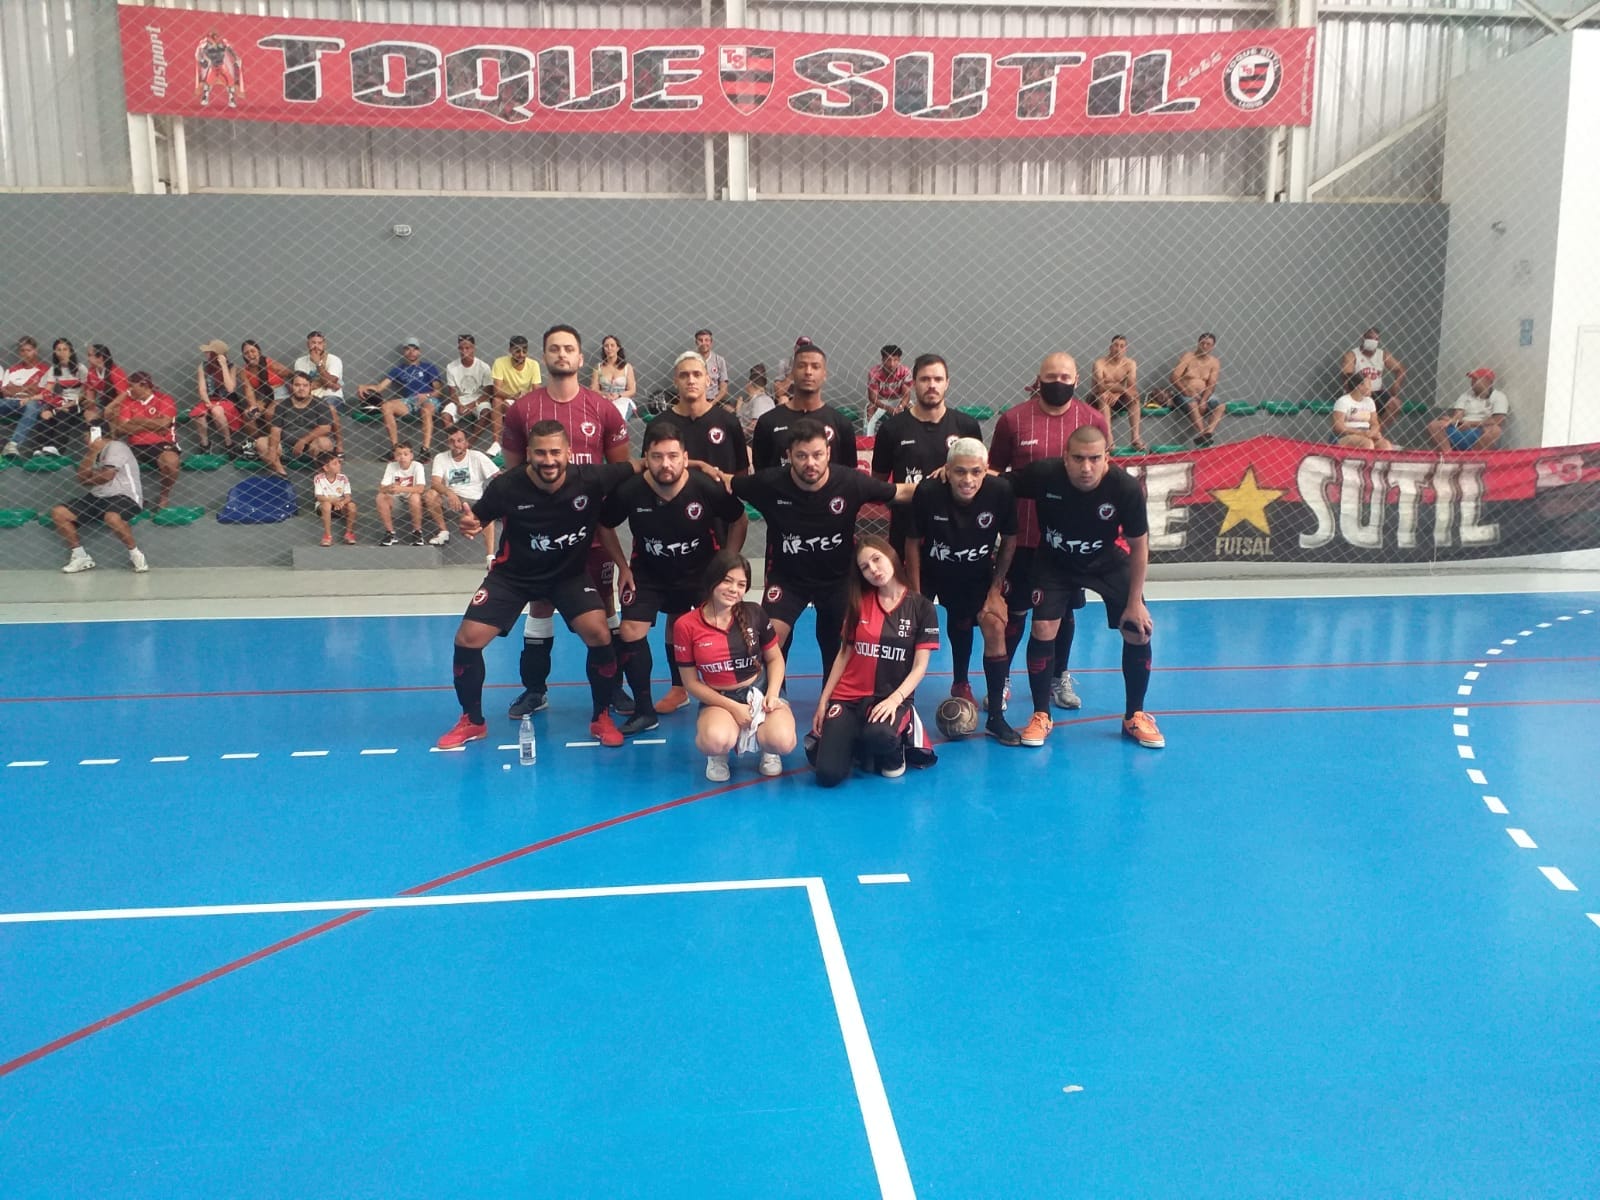 FOTO - Toque Sutil é campeão da 3ª Divisão de Futsal de Taboão da Serra